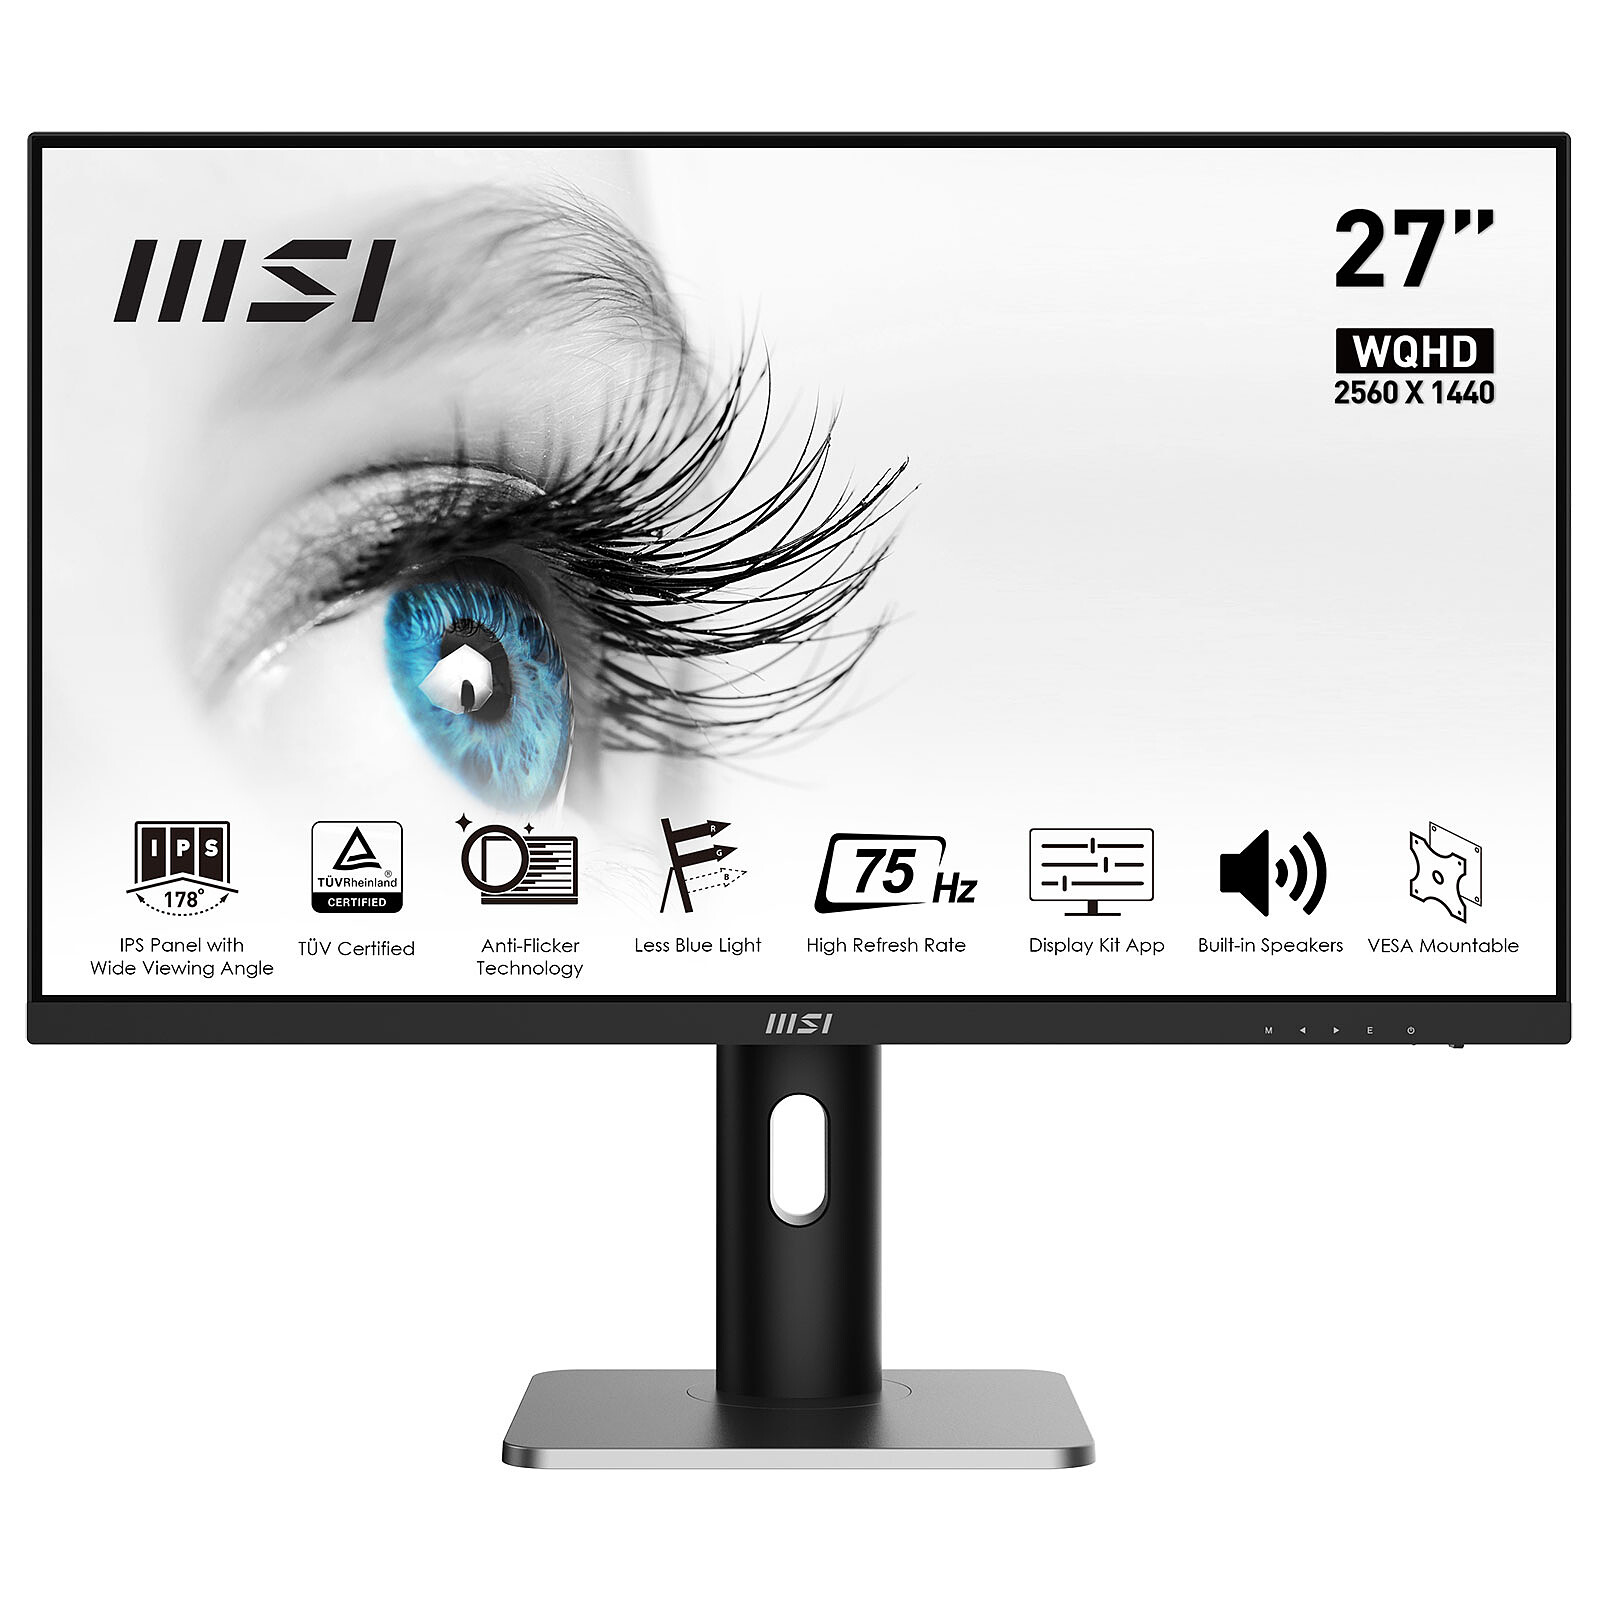 Las mejores ofertas en Monitores de computadora Dell 16:9 75 HZ